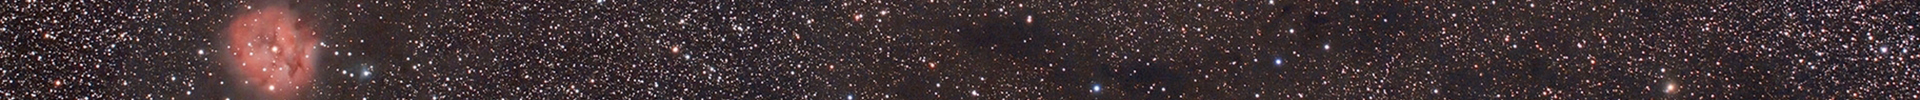 Telescopio in piazza, Poggio Rusco 10 Agosto ore 21:15